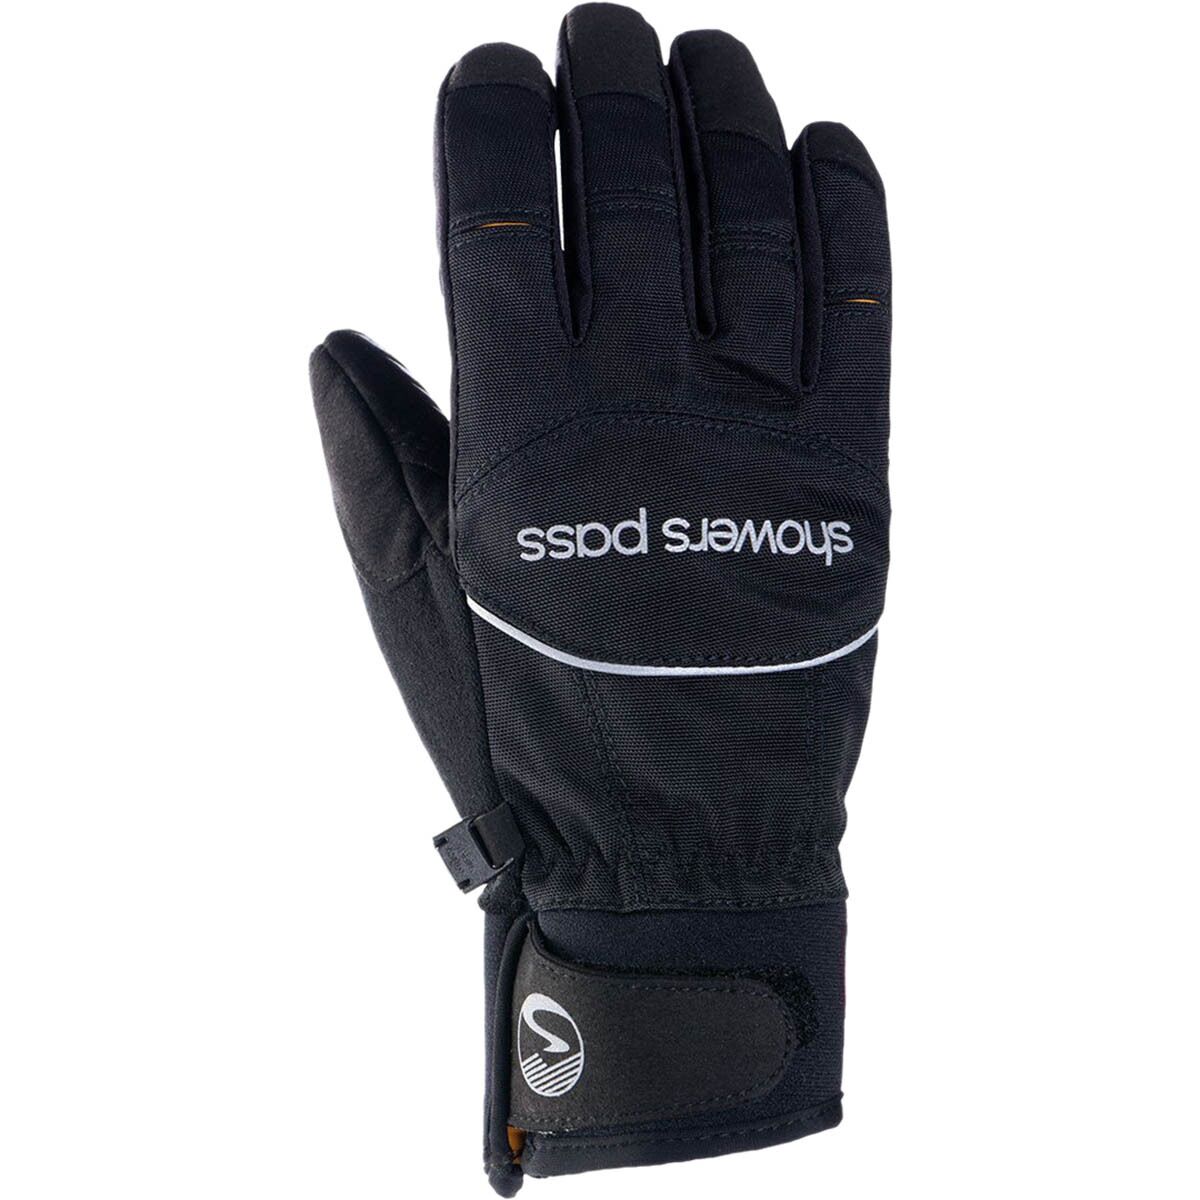 Showers Pass Crosspoint Softshell WP Glove - Women's